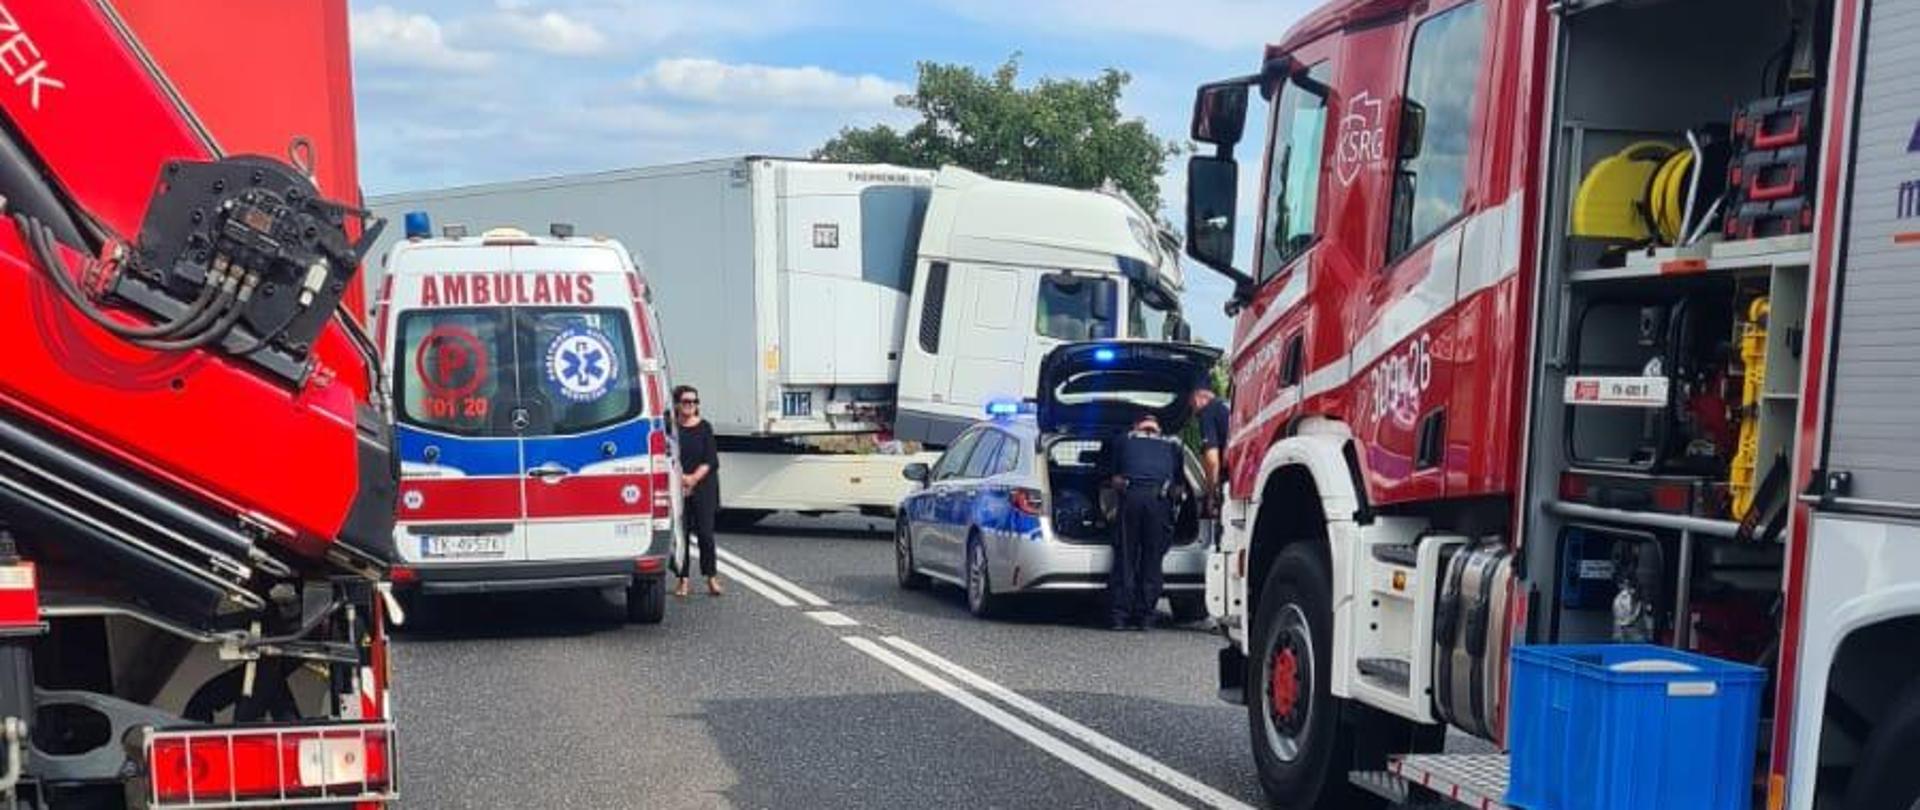 Zdjęcie przedstawia drogę krajową gdzie doszło do wypadku. Od lewej stoją: samochód pożarniczy, ambulans, w głębi uszkodzona ciężarówka, radiowóz i kolejny samochód strażacki.